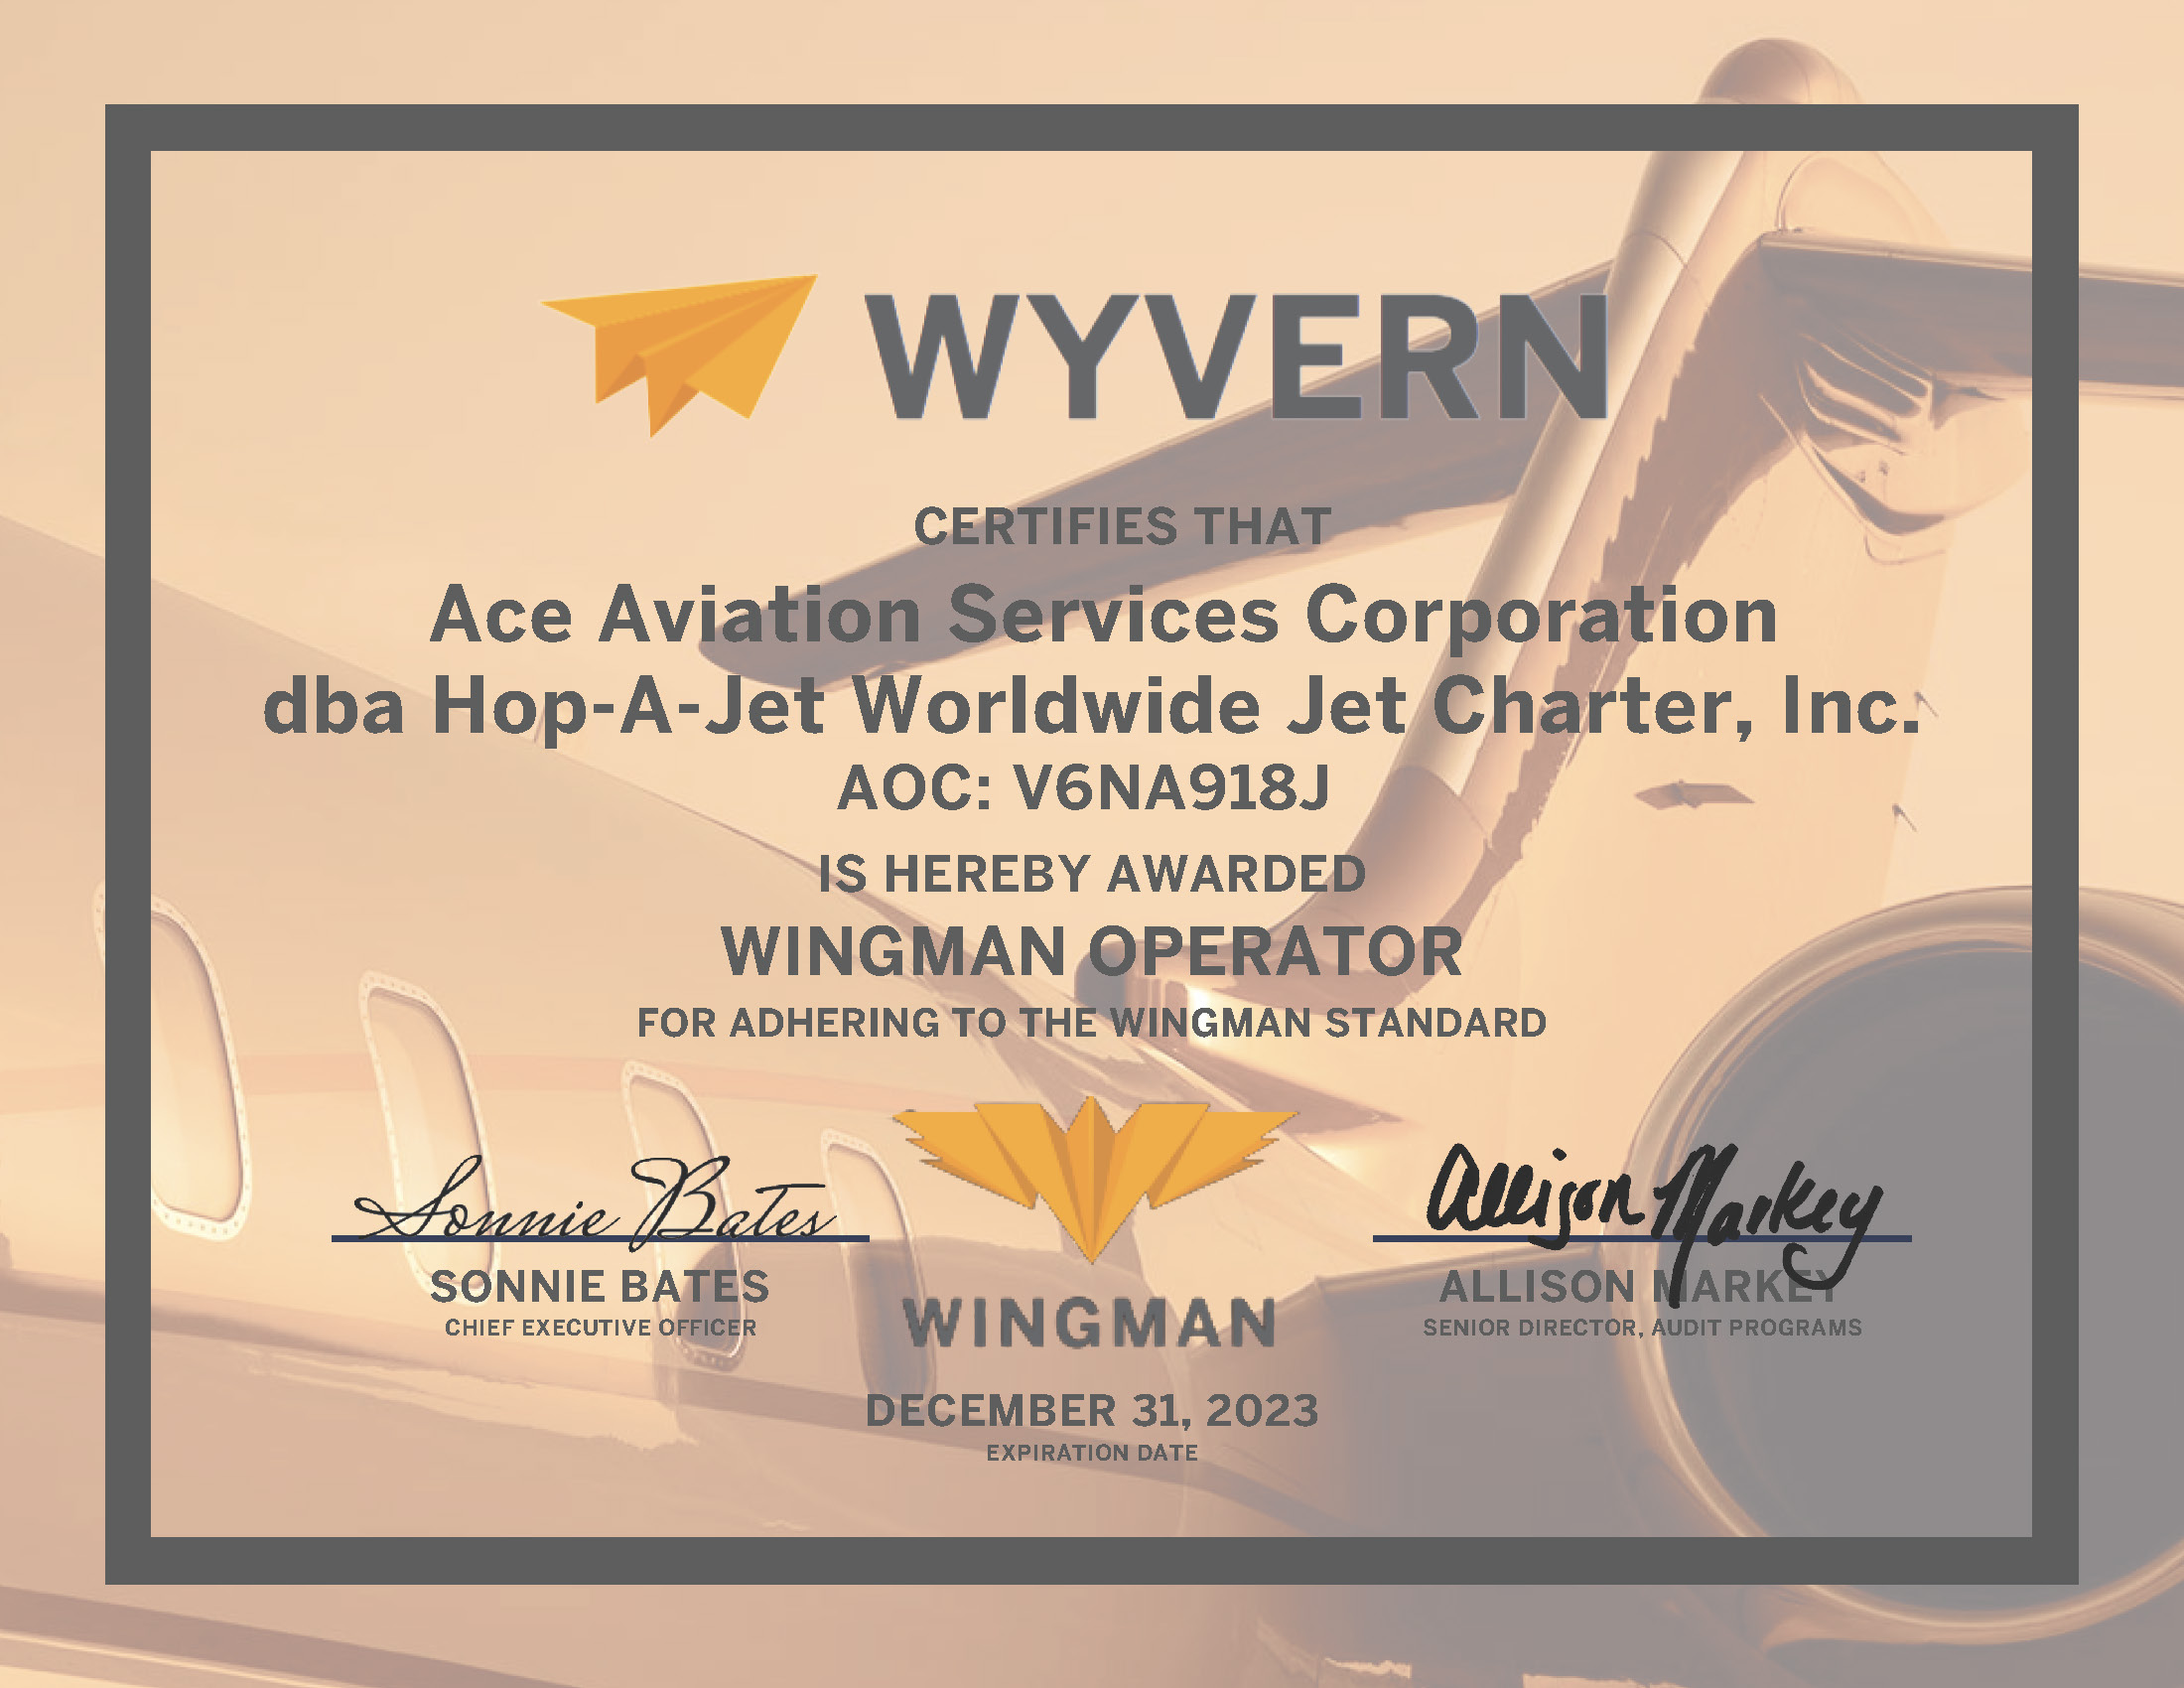 https://www.hopajetworldwide.com/wp-content/uploads/2022/02/2022-Hop-A-Jet-Wingman-Certificate